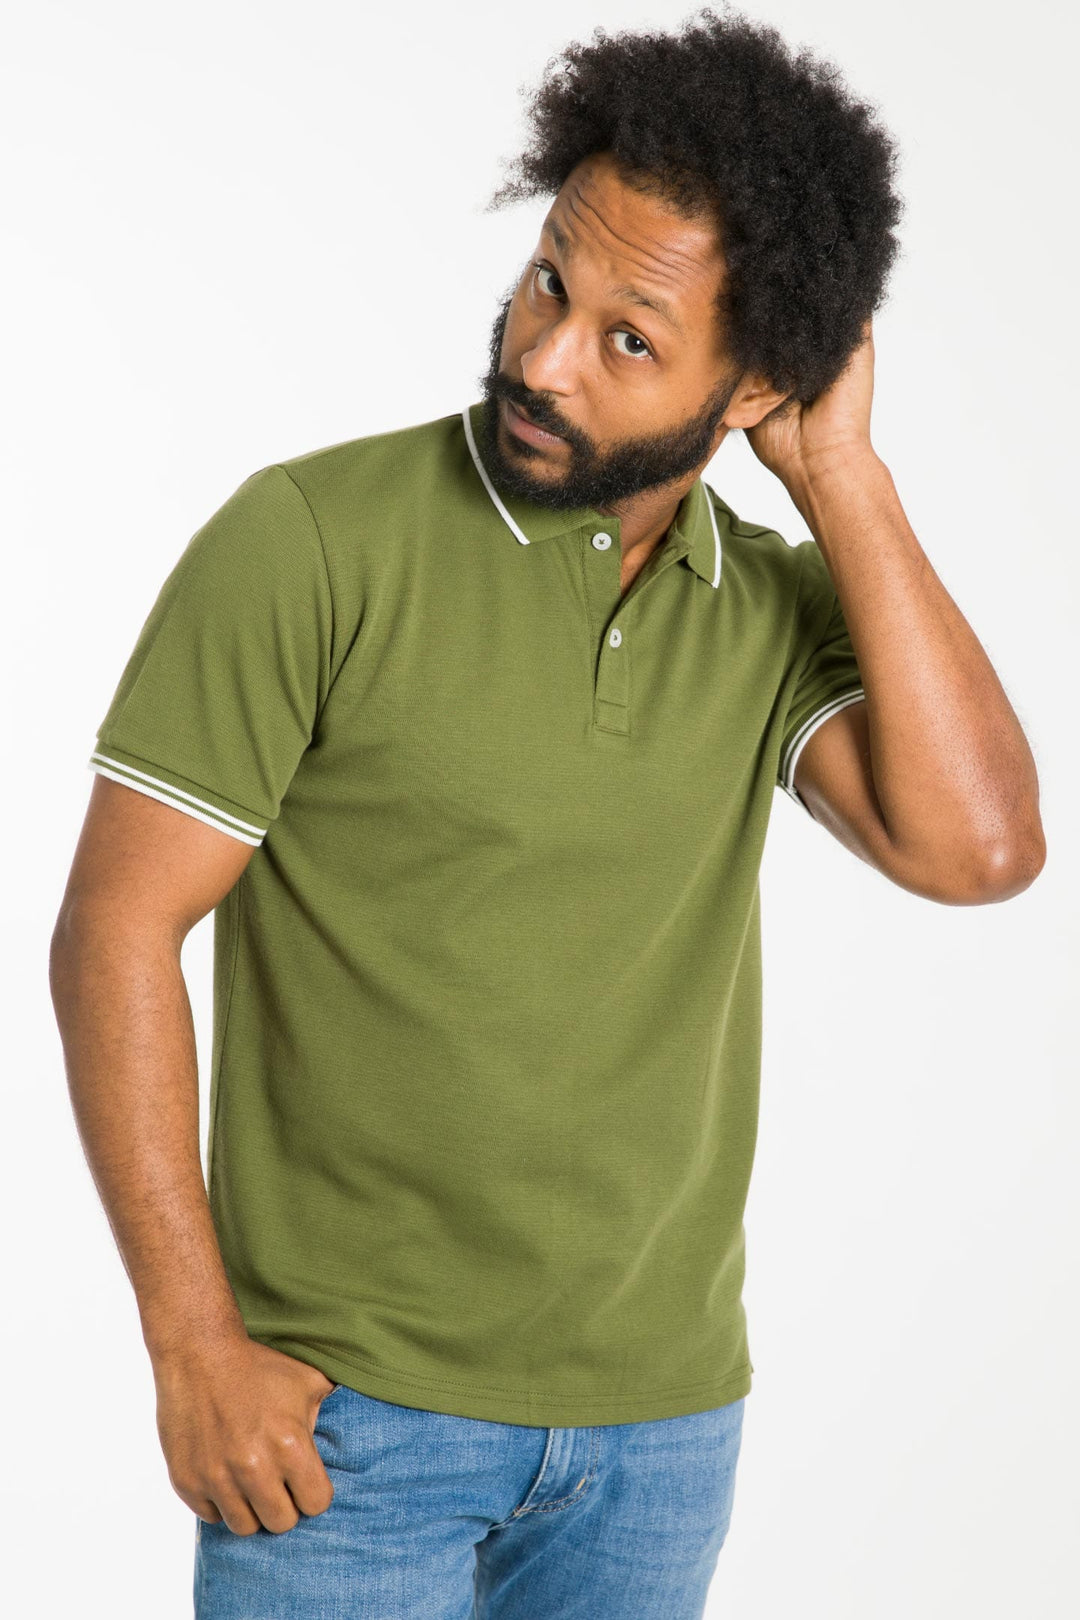 Buy Olive Micro Pique Polo Shirt for Short Men | Ash & Erie   Short Sleeve Polo Shirt